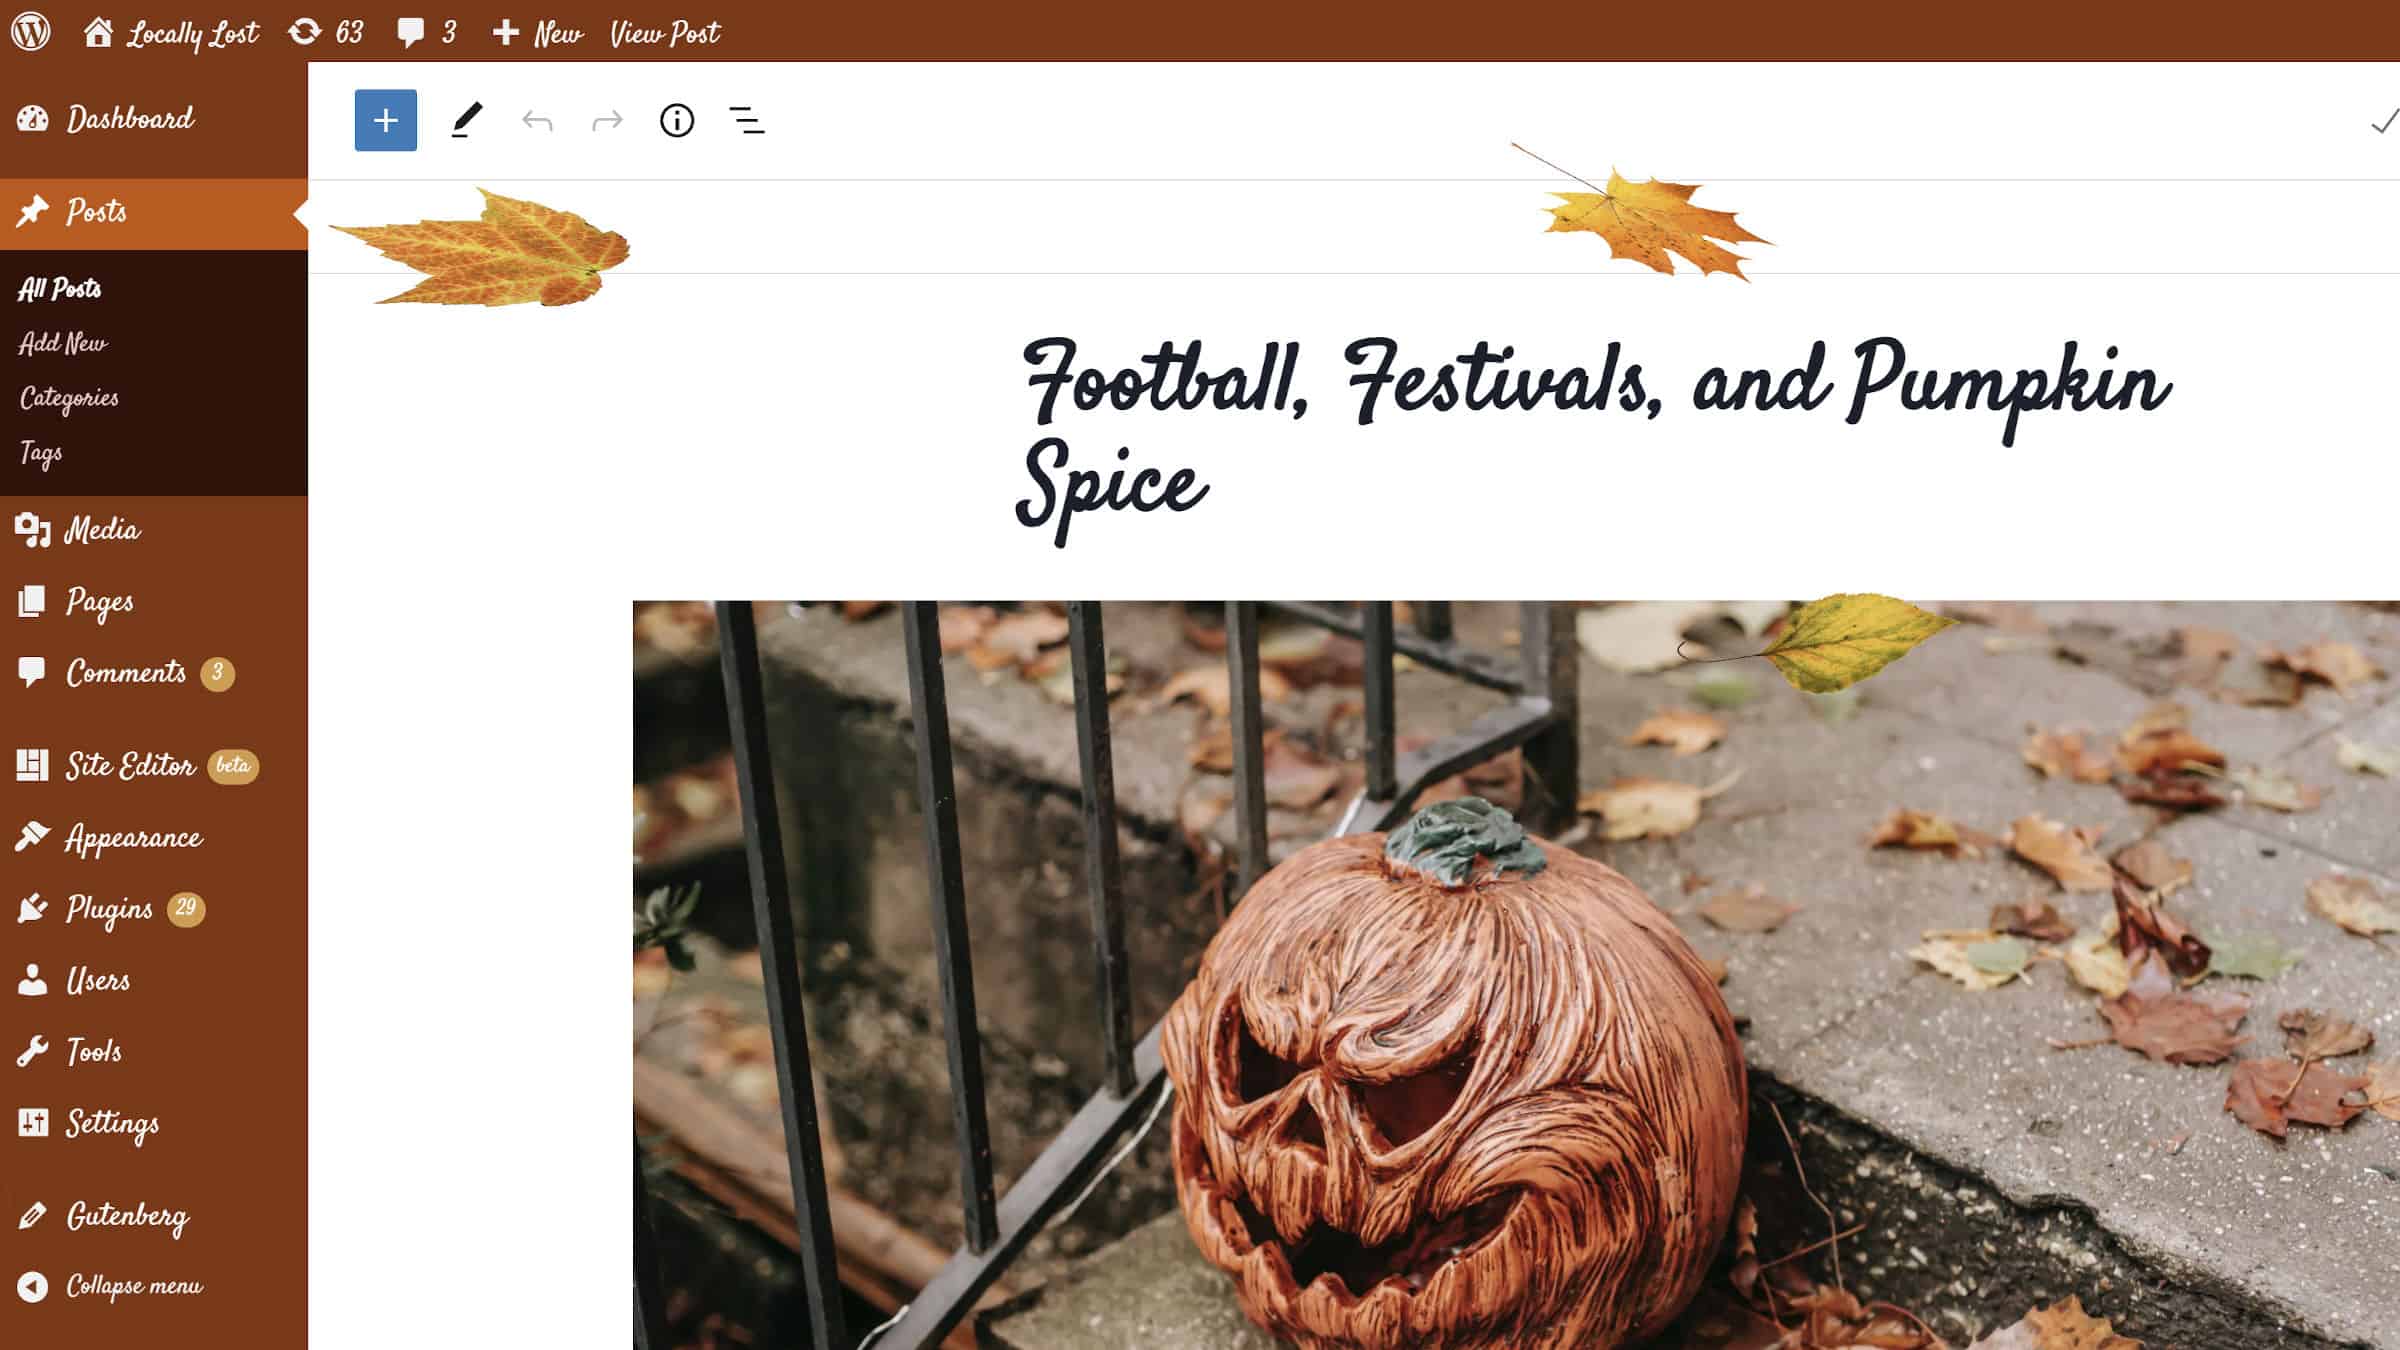 Aggiungi un po' di pepe alla zucca al tuo amministratore di WordPress questo autunno – WP Tavern